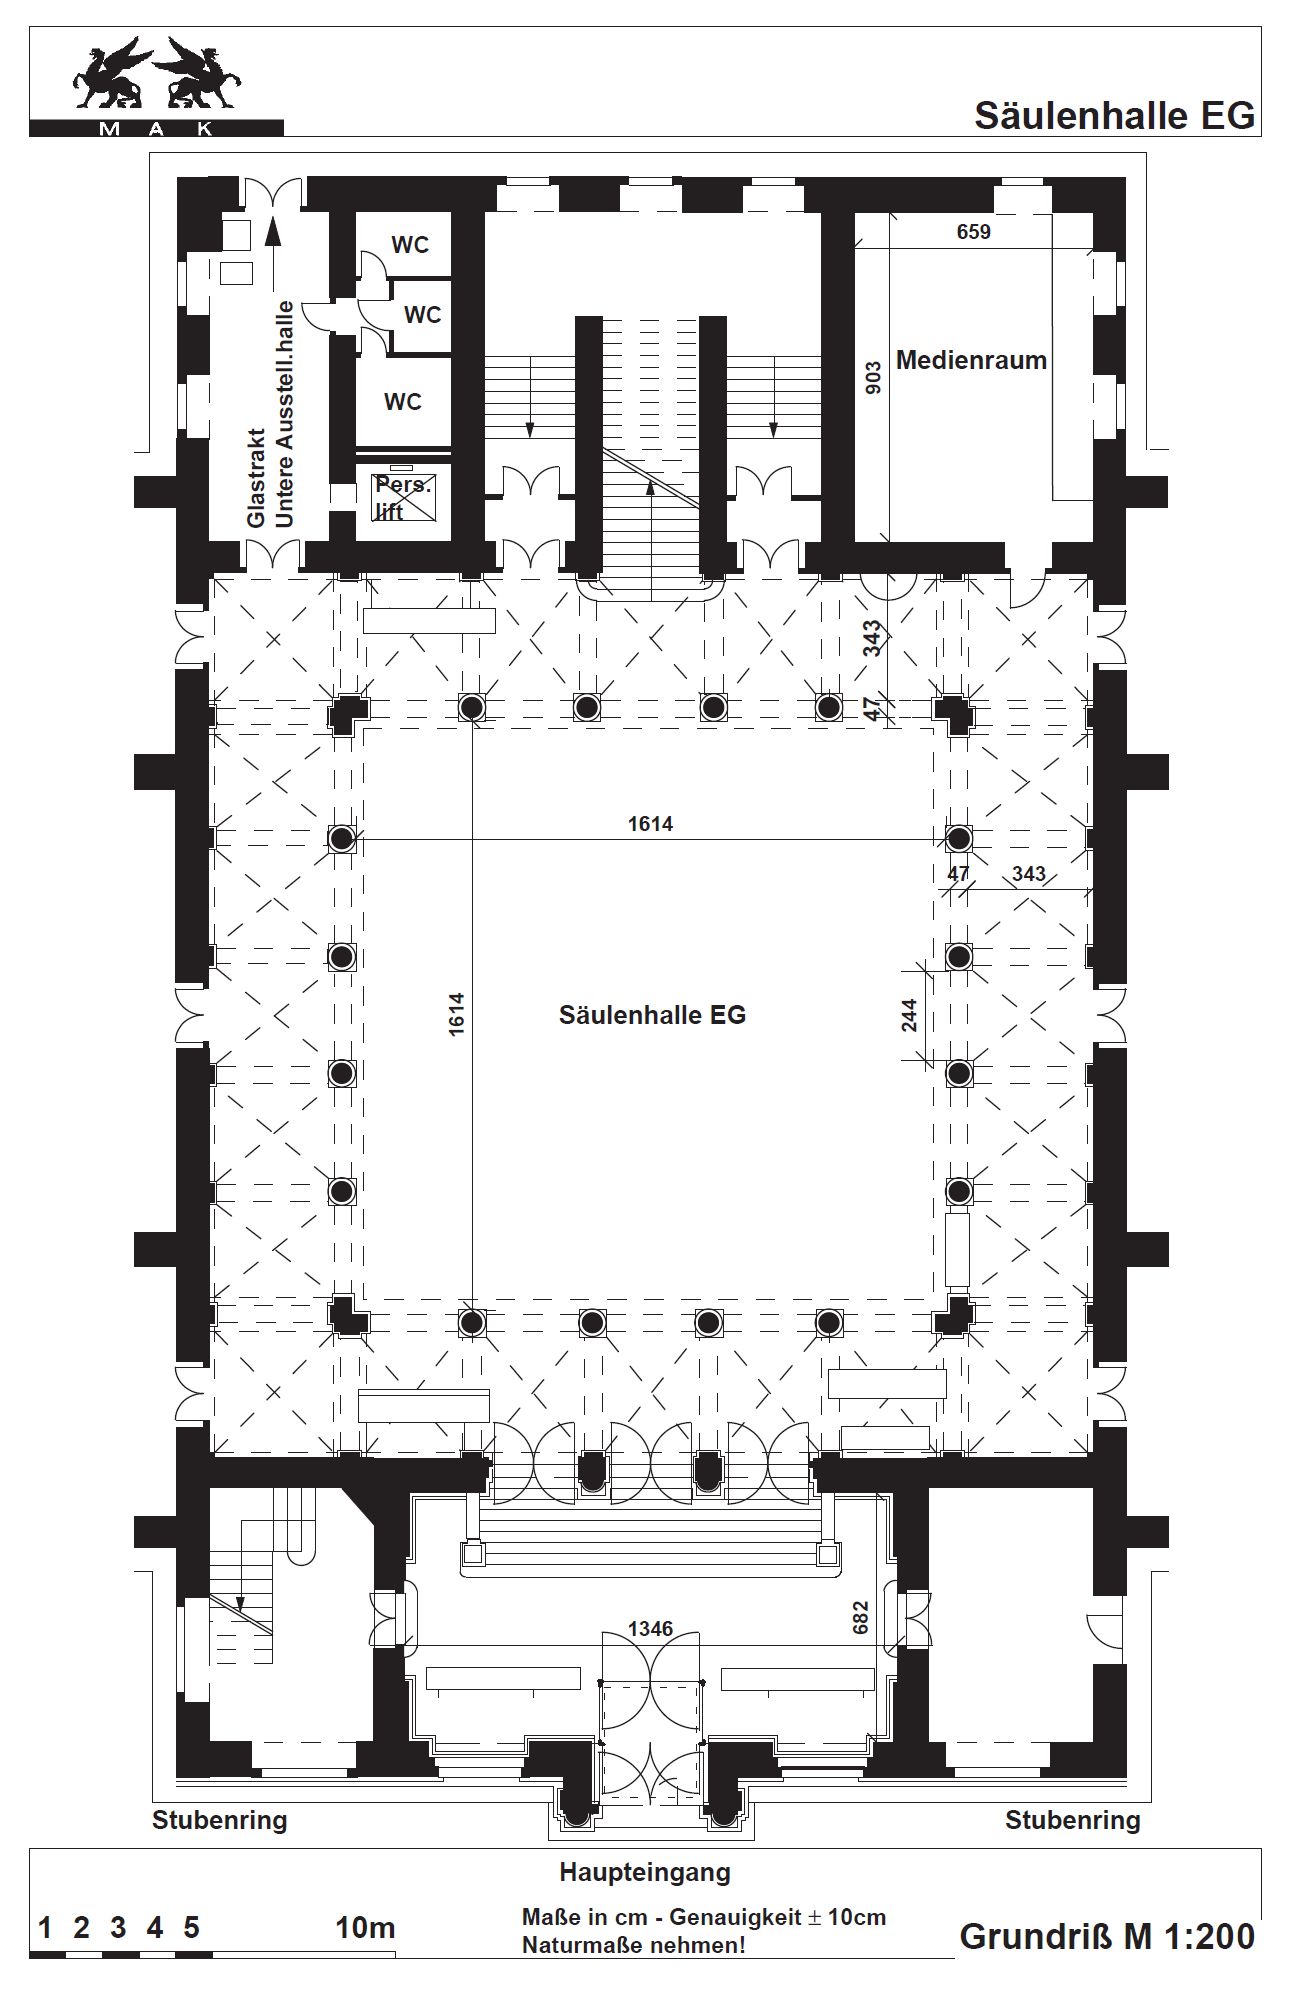 Floor plan Säulenhalle ground floor